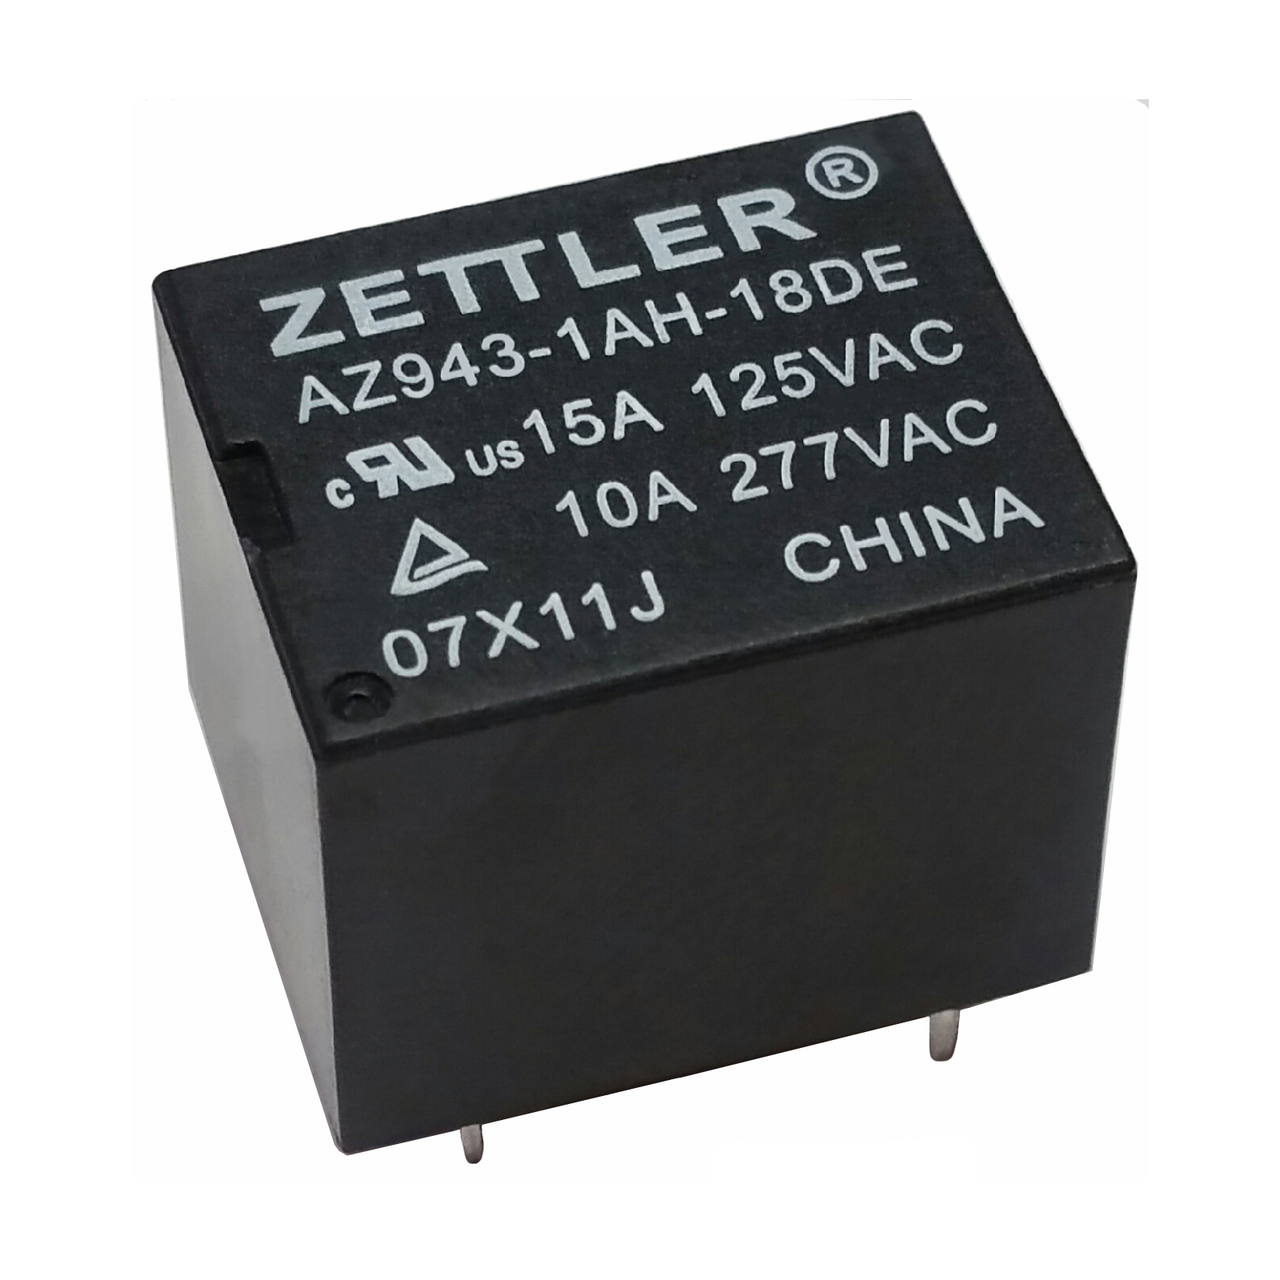 American Zettler AZ943-1AH-48DE Power Relay